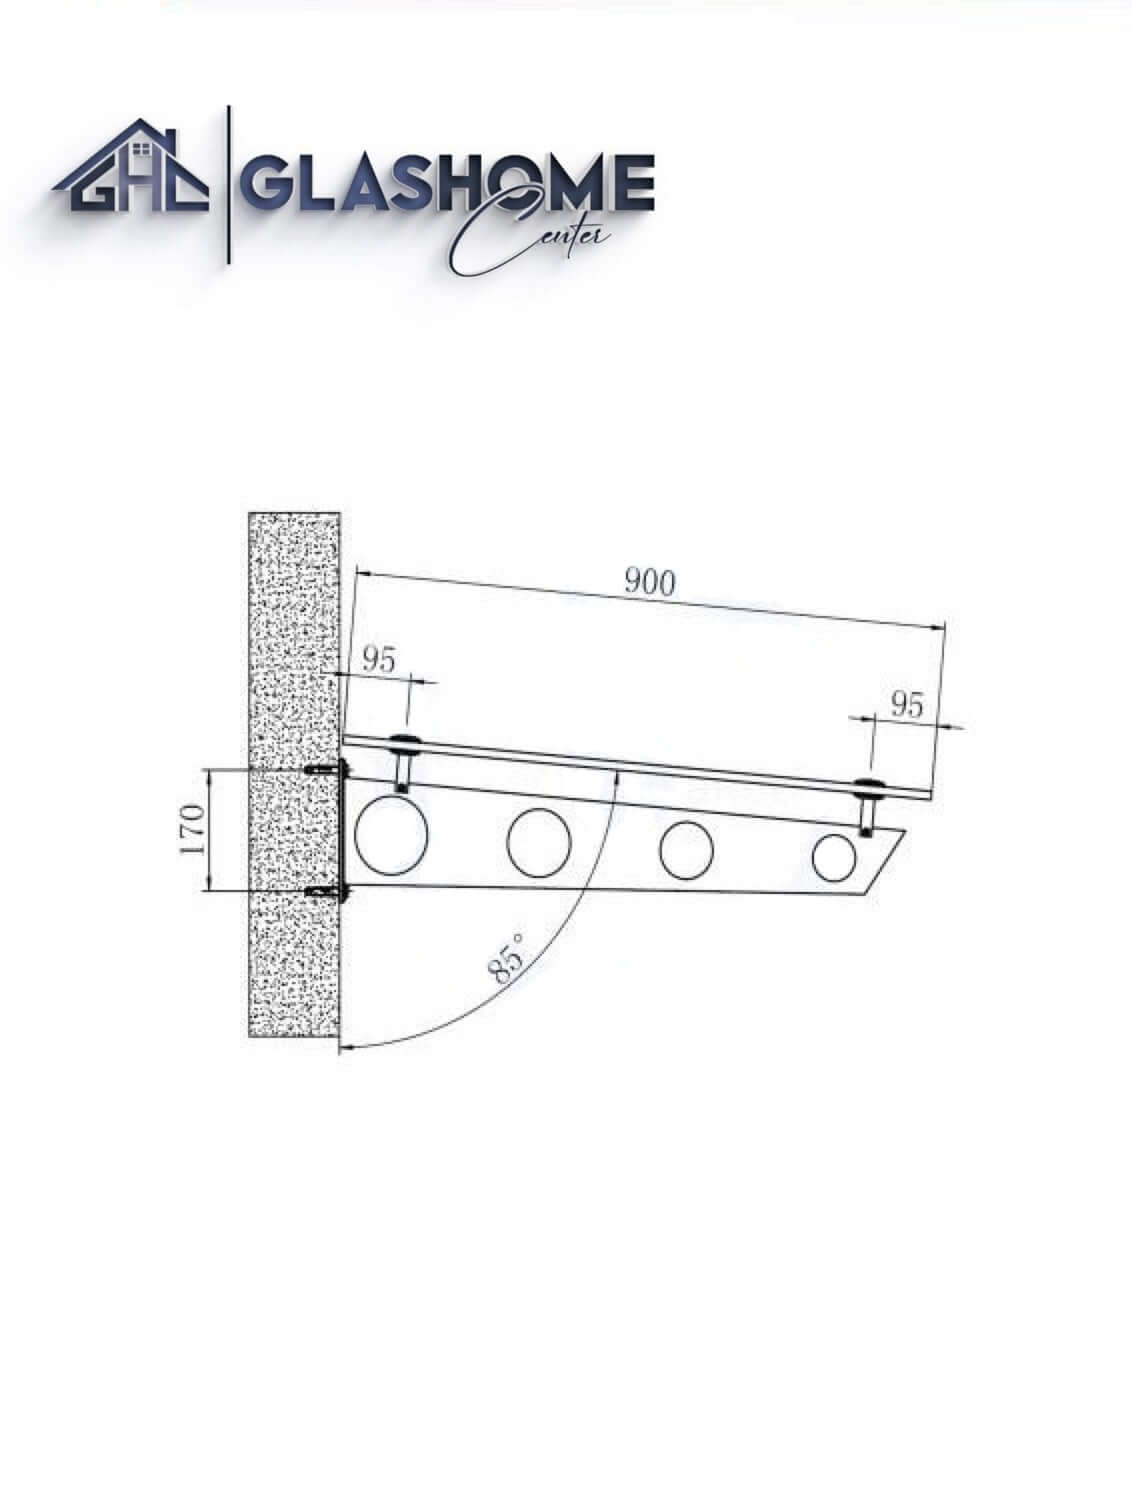 GlasHomeCenter - Glasvordach - Milchglas - 200x90cm - 13,1mm VSG - incl. 3 Edelstahlhalterungen variante "Stoccolma"